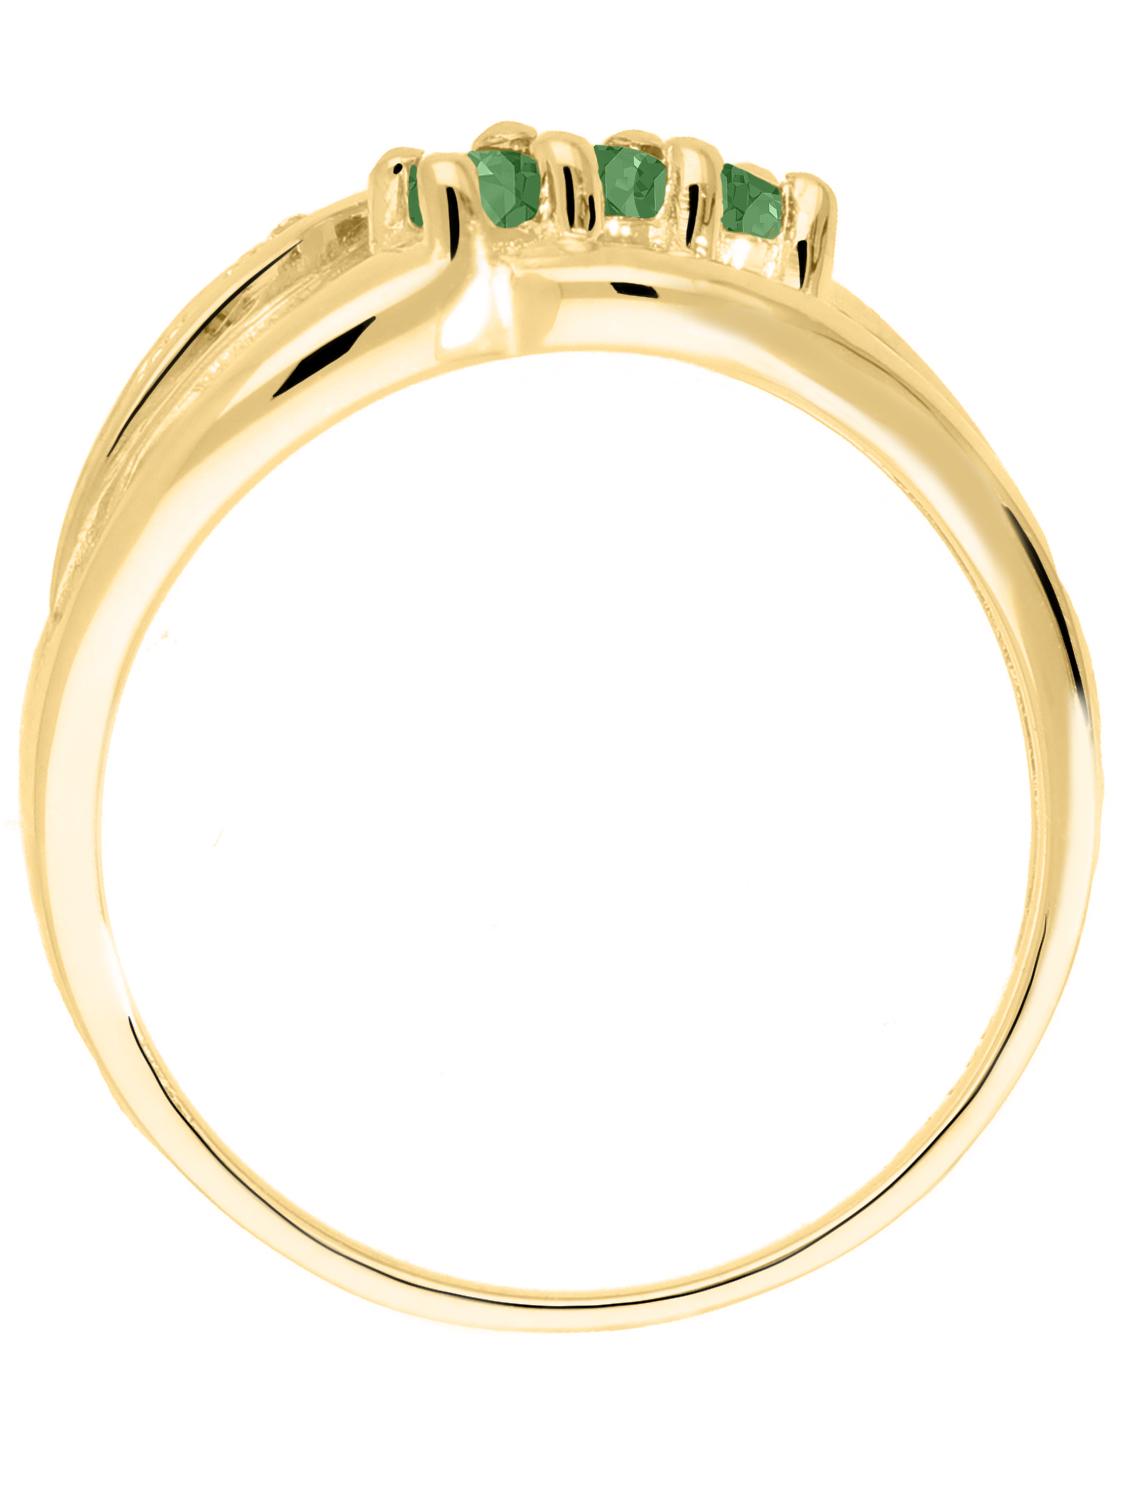 Damenring aus echtem Gelbgold mit Diamanten und Smaragd Edelsteinen - Our Lady | Vorderansicht